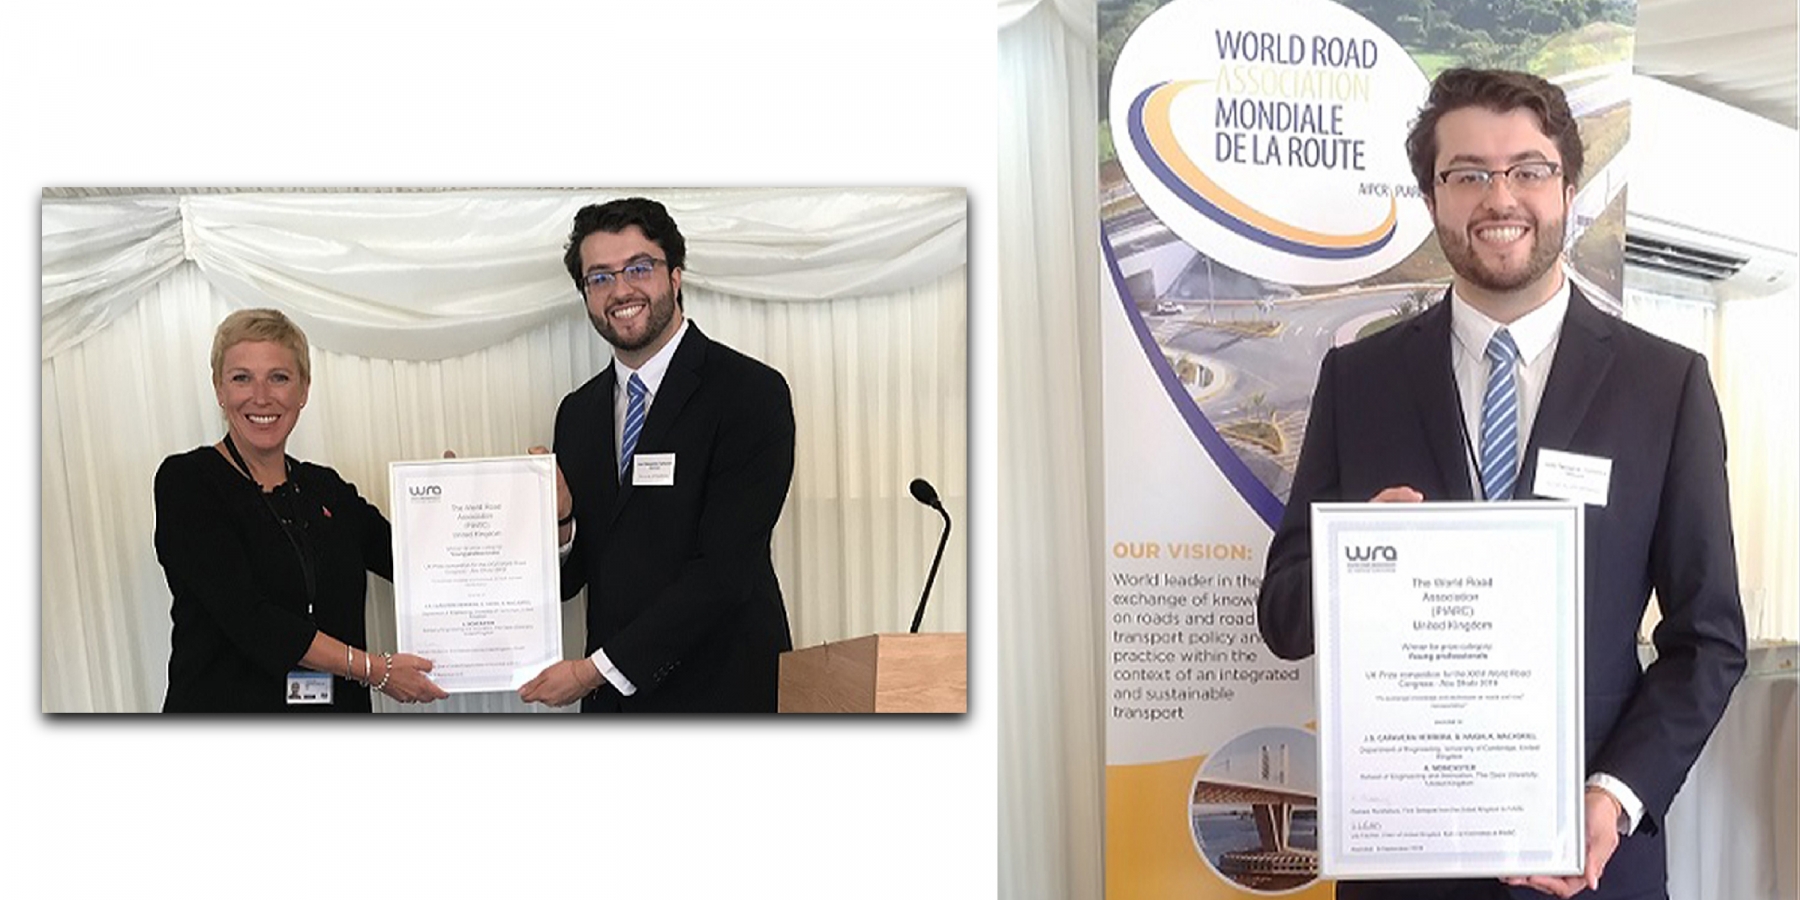 El ingeniero civil Juan Sebastián Cañavera, egresado de la Universidad Nacional de Colombia gana el Premio del Reino Unido para Jóvenes Profesionales en el Congreso Mundial de la Carretera celebrado por la PIARC en el Palacio de Westminster en Abu Dh